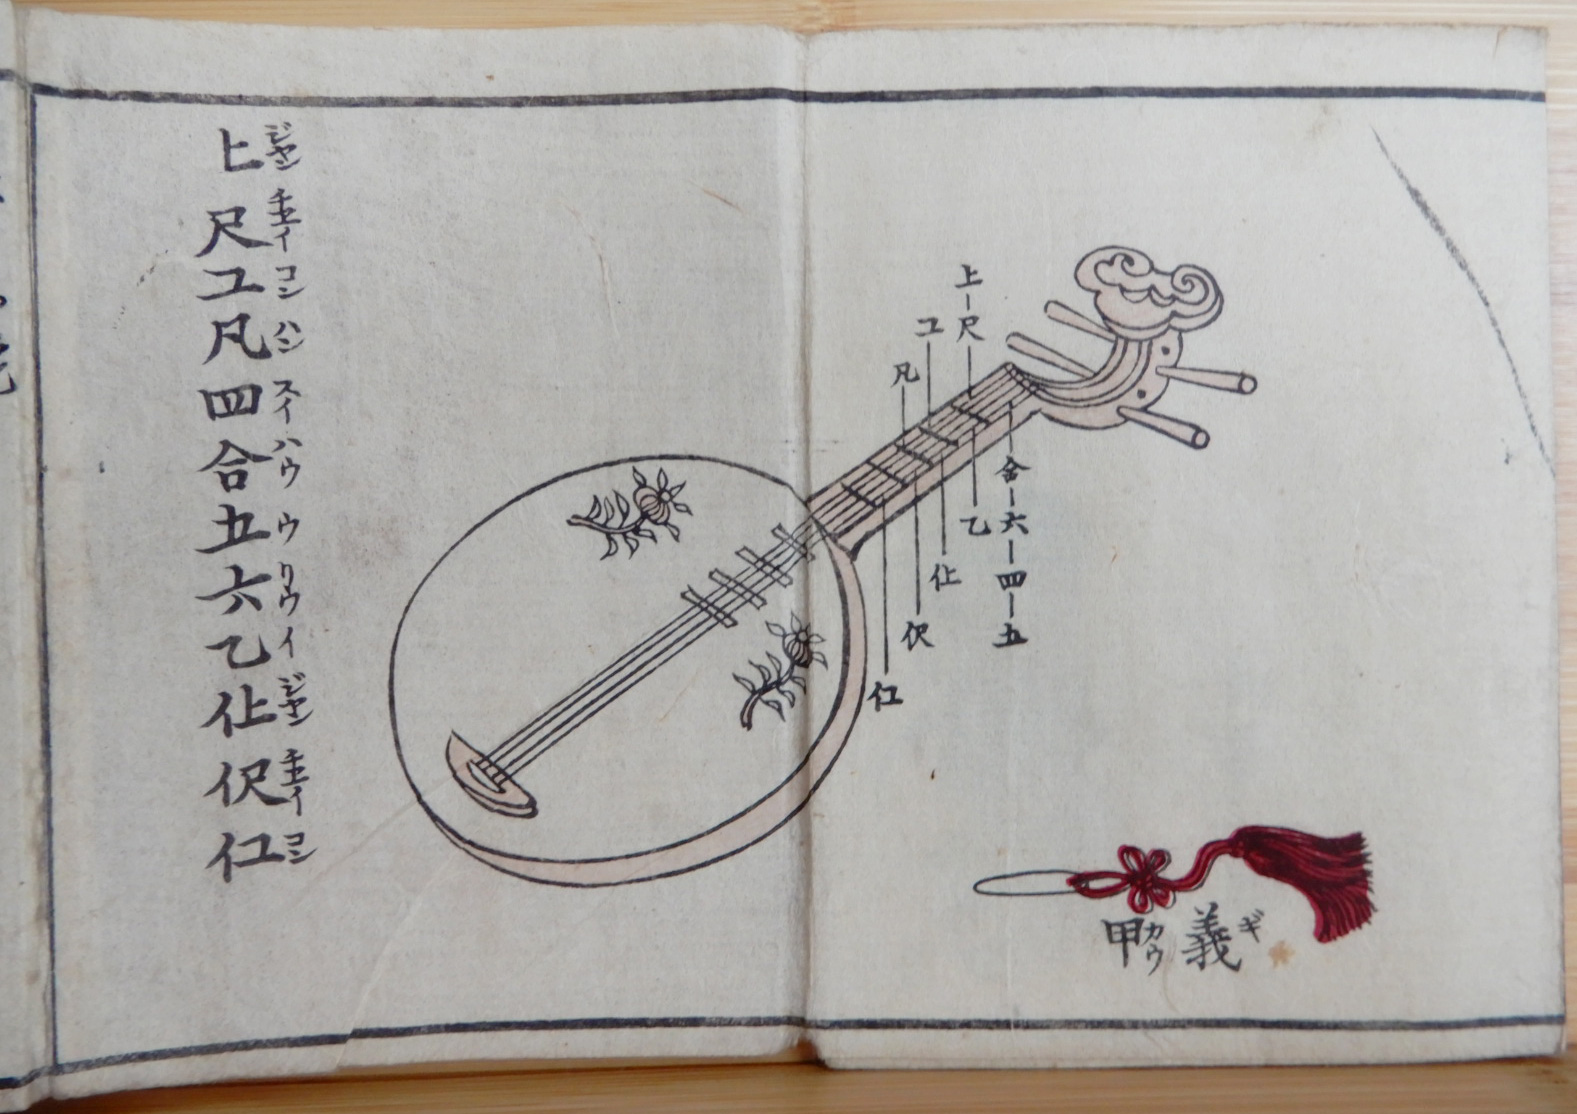 明清楽 minsingaku 清楽譜の九連環 1880年代篇